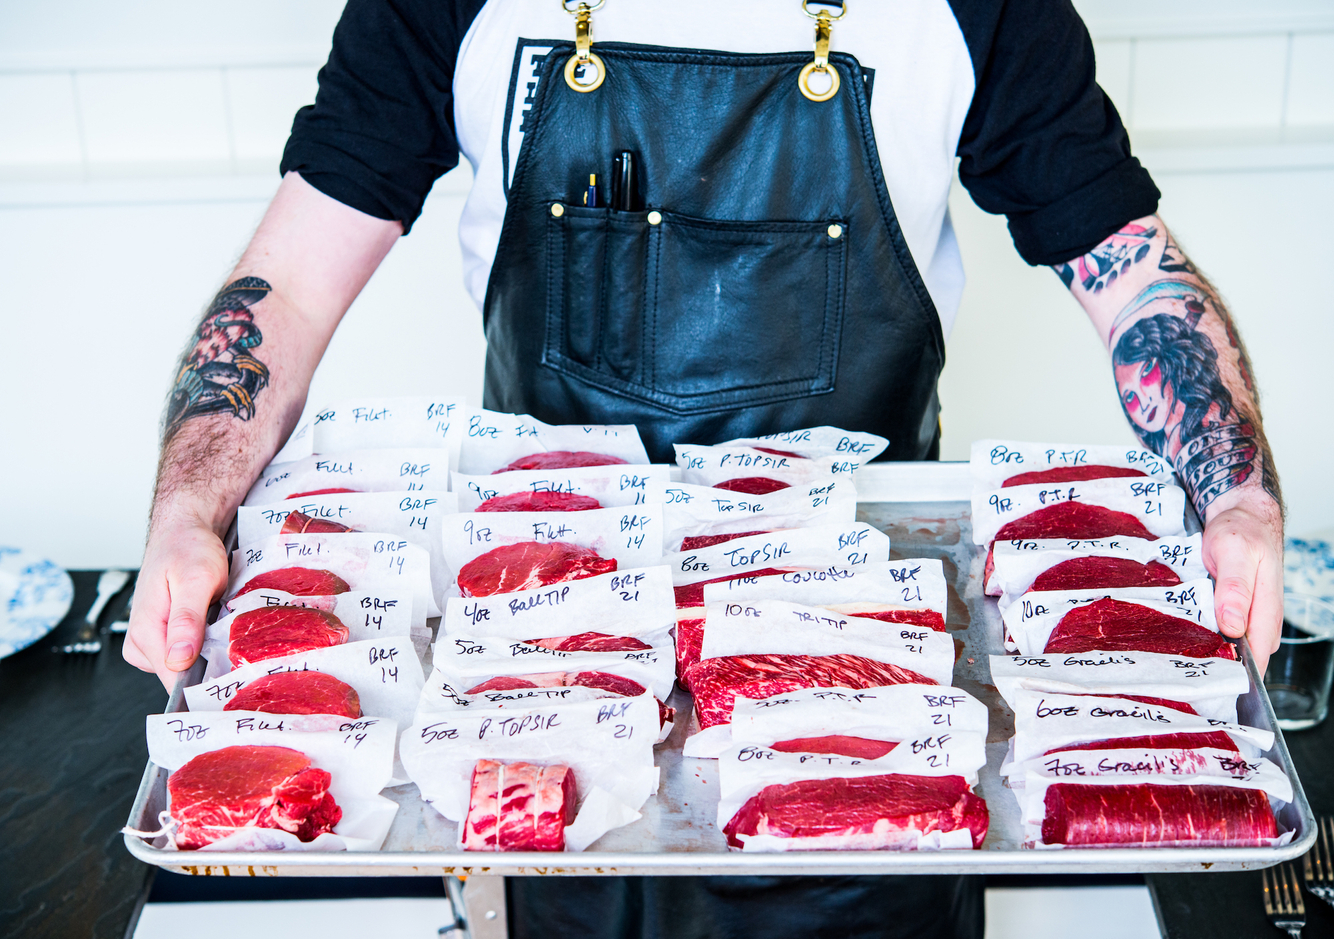 Butcher raw meat cuts display